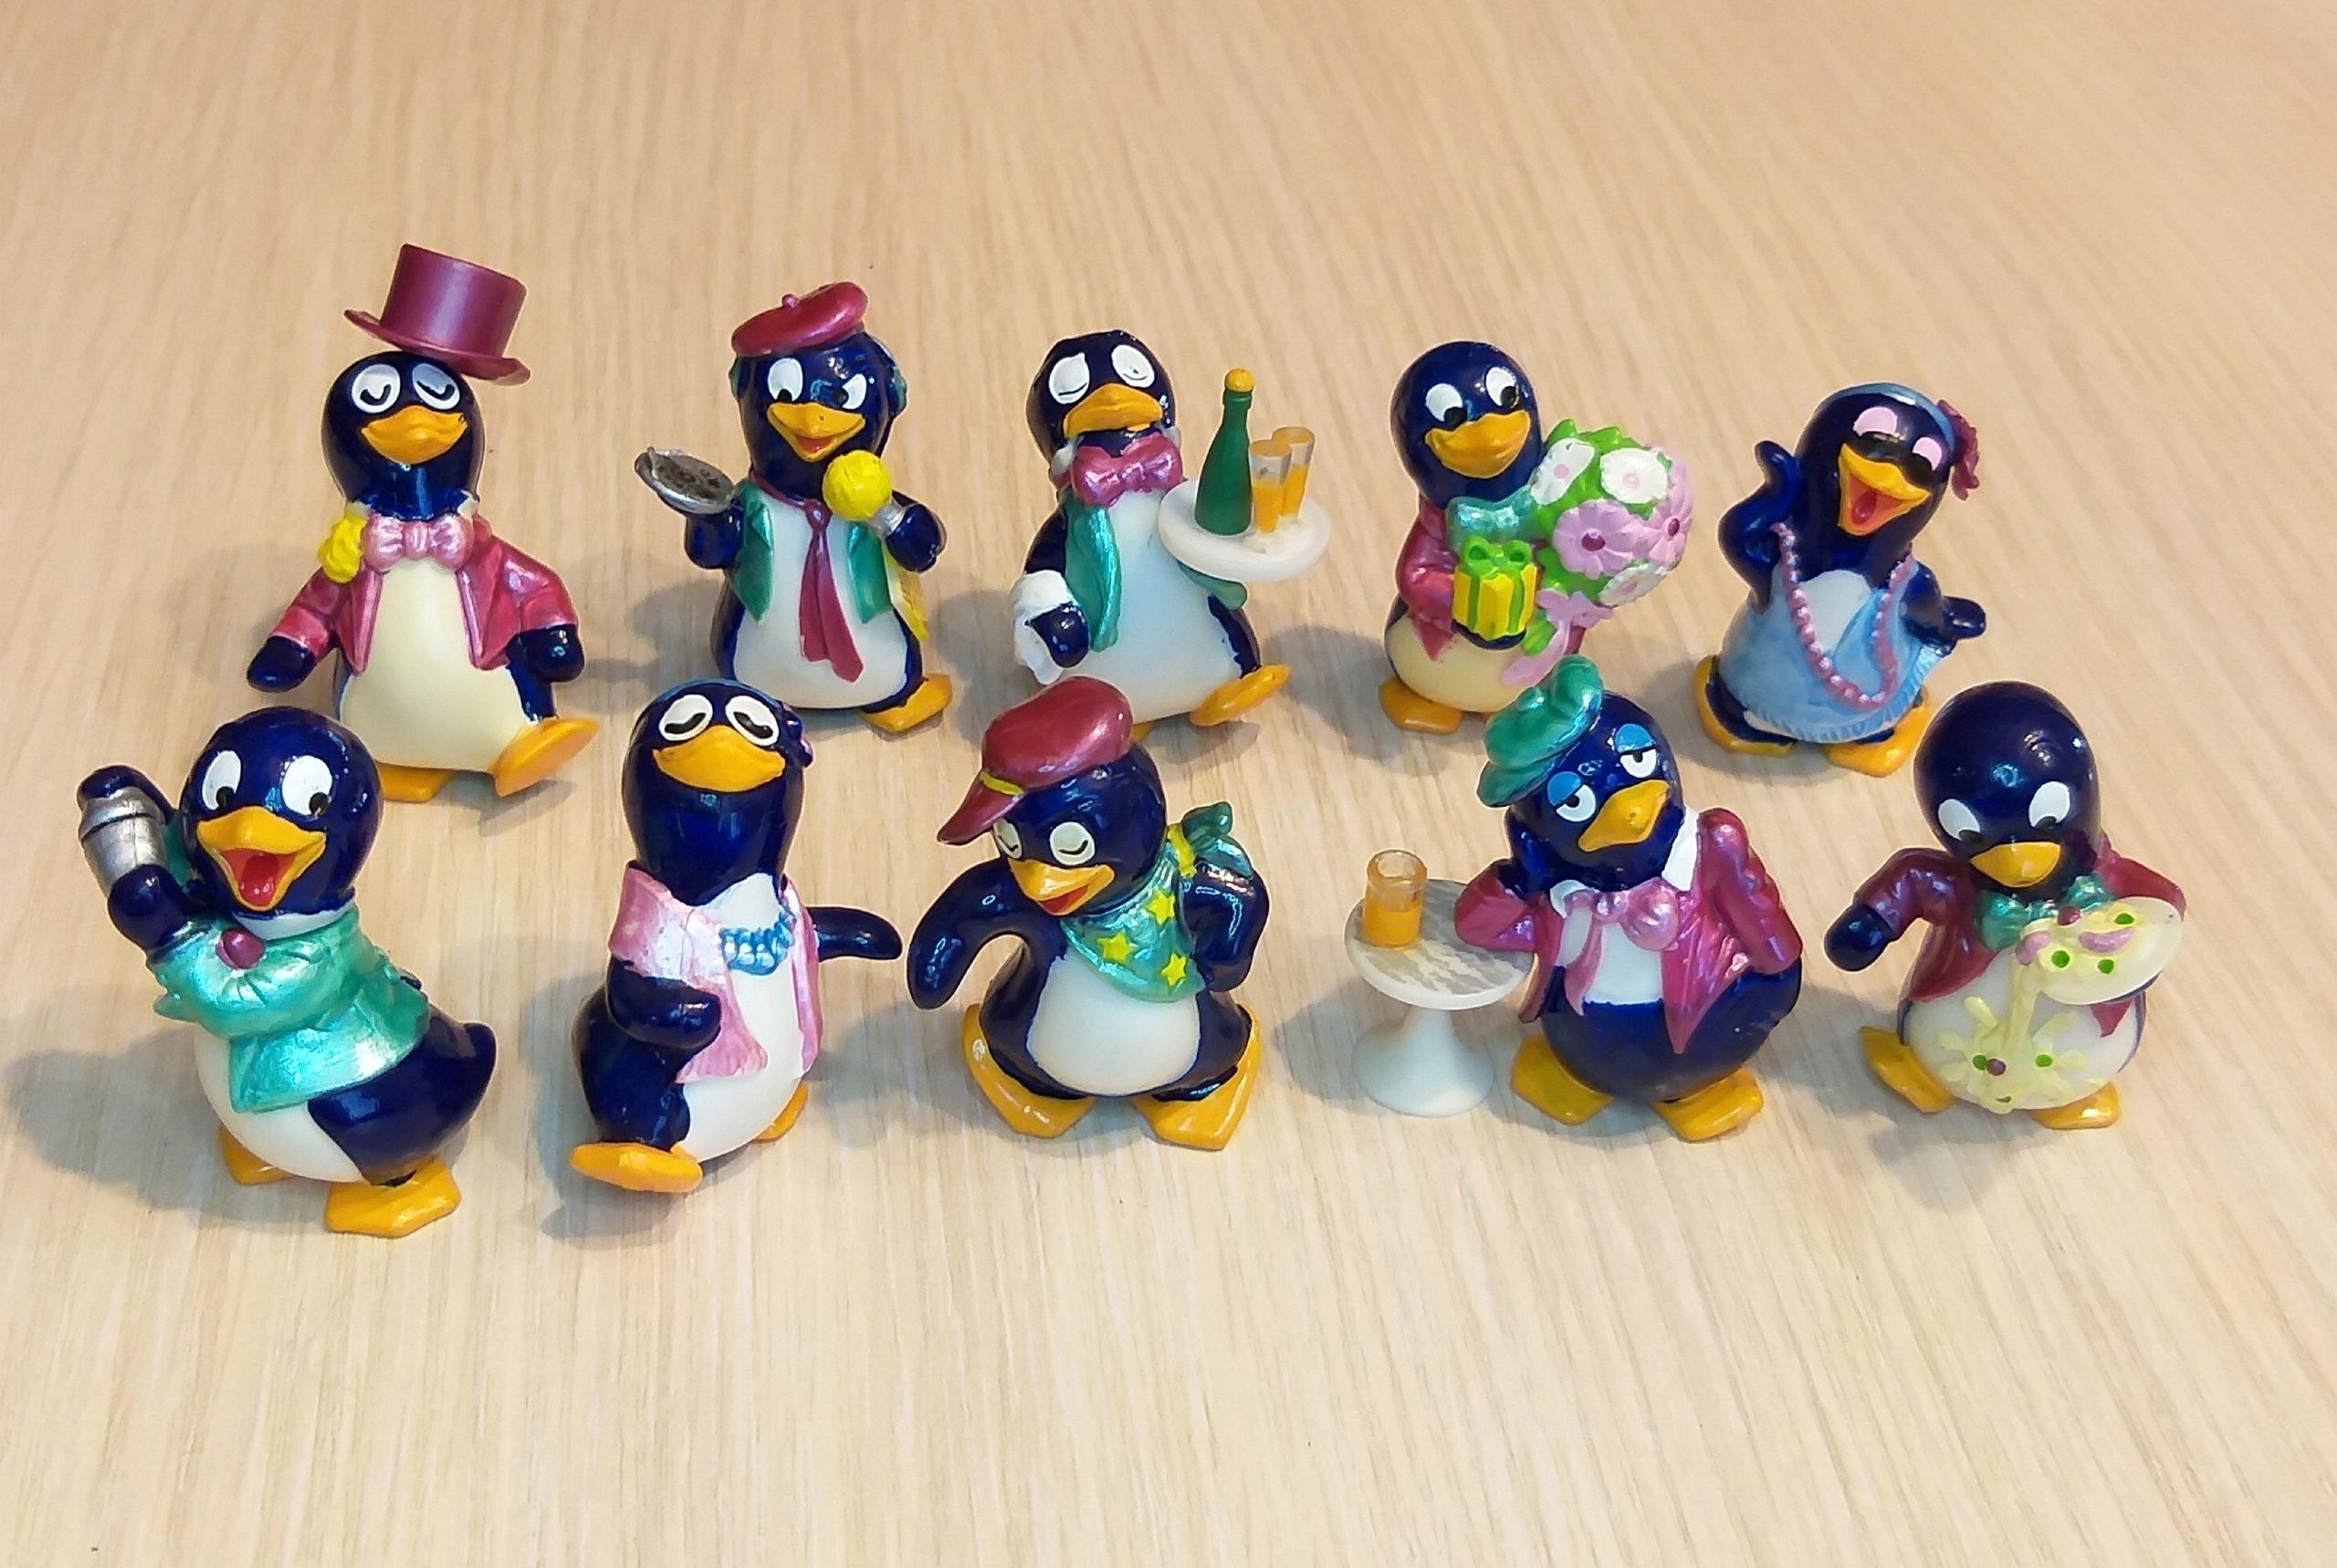 Киндер игрушки пингвины. Киндер сюрприз пингвины 1992. Коллекция Киндер сюрприз пингвинчики. Пингвины Киндер сюрприз 90-х. Коллекция киндеров пингвины.